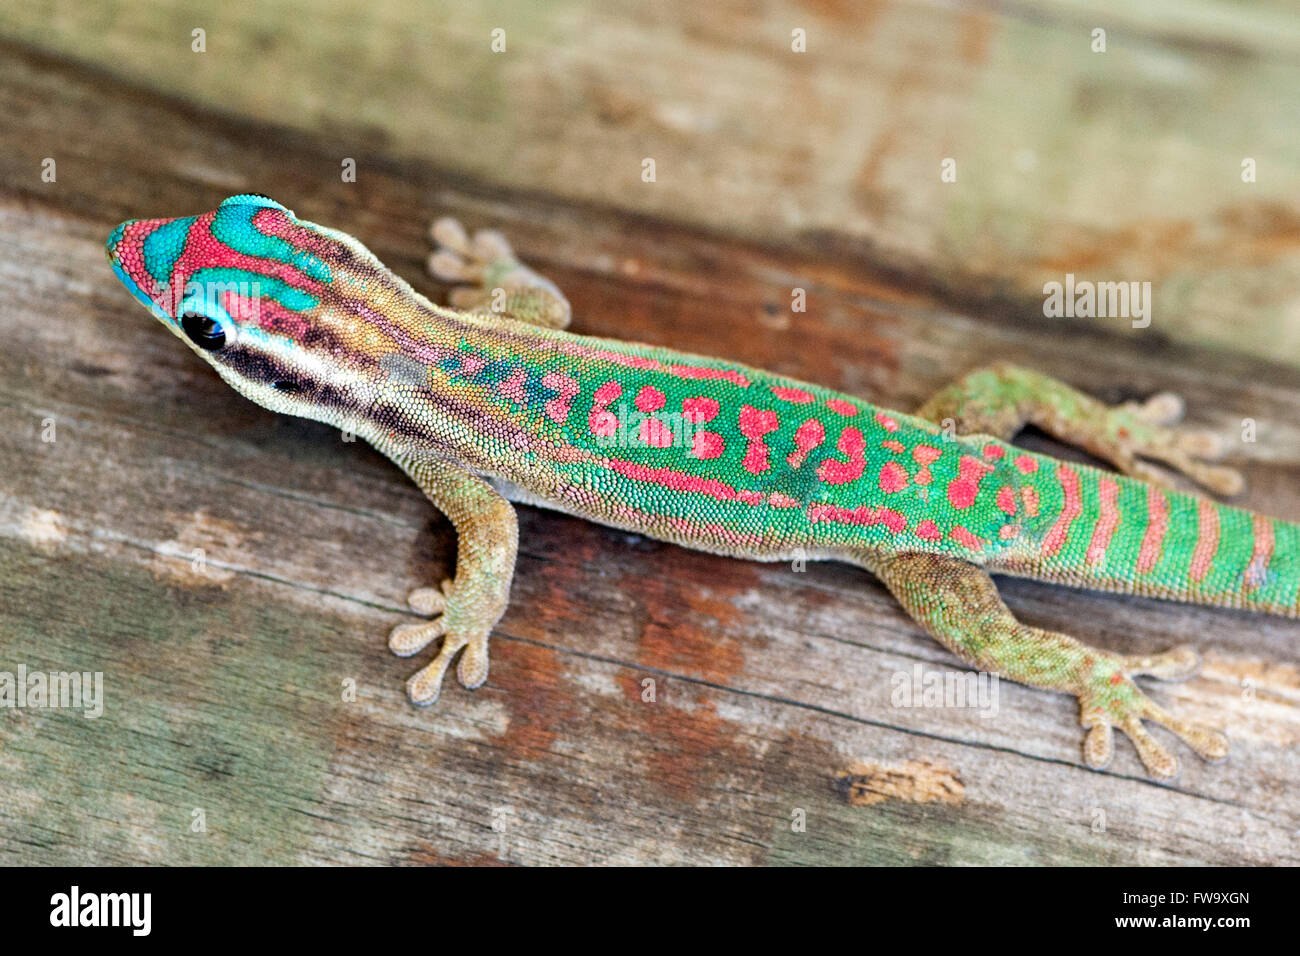 Giorno ornati gecko (Phelsuma ornata) sull'isolotto di Ile aux egrette in Mauritius. Foto Stock